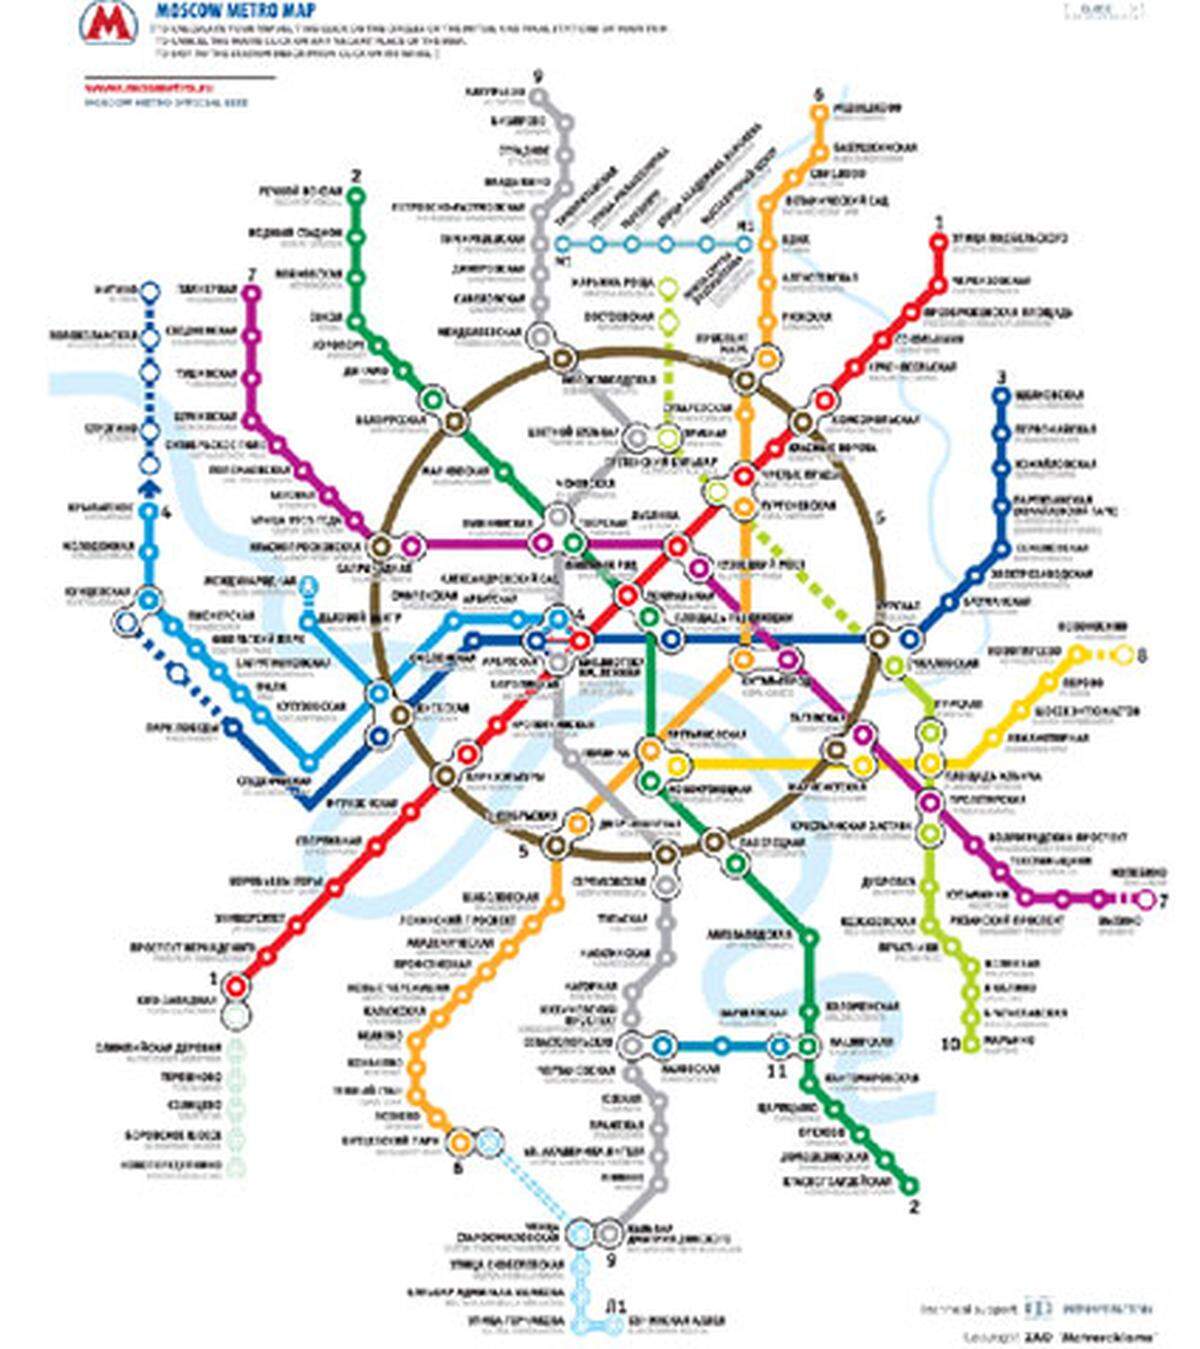 Das System der Moskauer Metro ist relativ einfach aufgebaut - jeder Linie wird eine Farbe zugeordnet. Manchmal sind die Wege bei den Umsteigbahnhöfen etwas weit, dafür wird man mit einmaliger Architektur entschädigt.